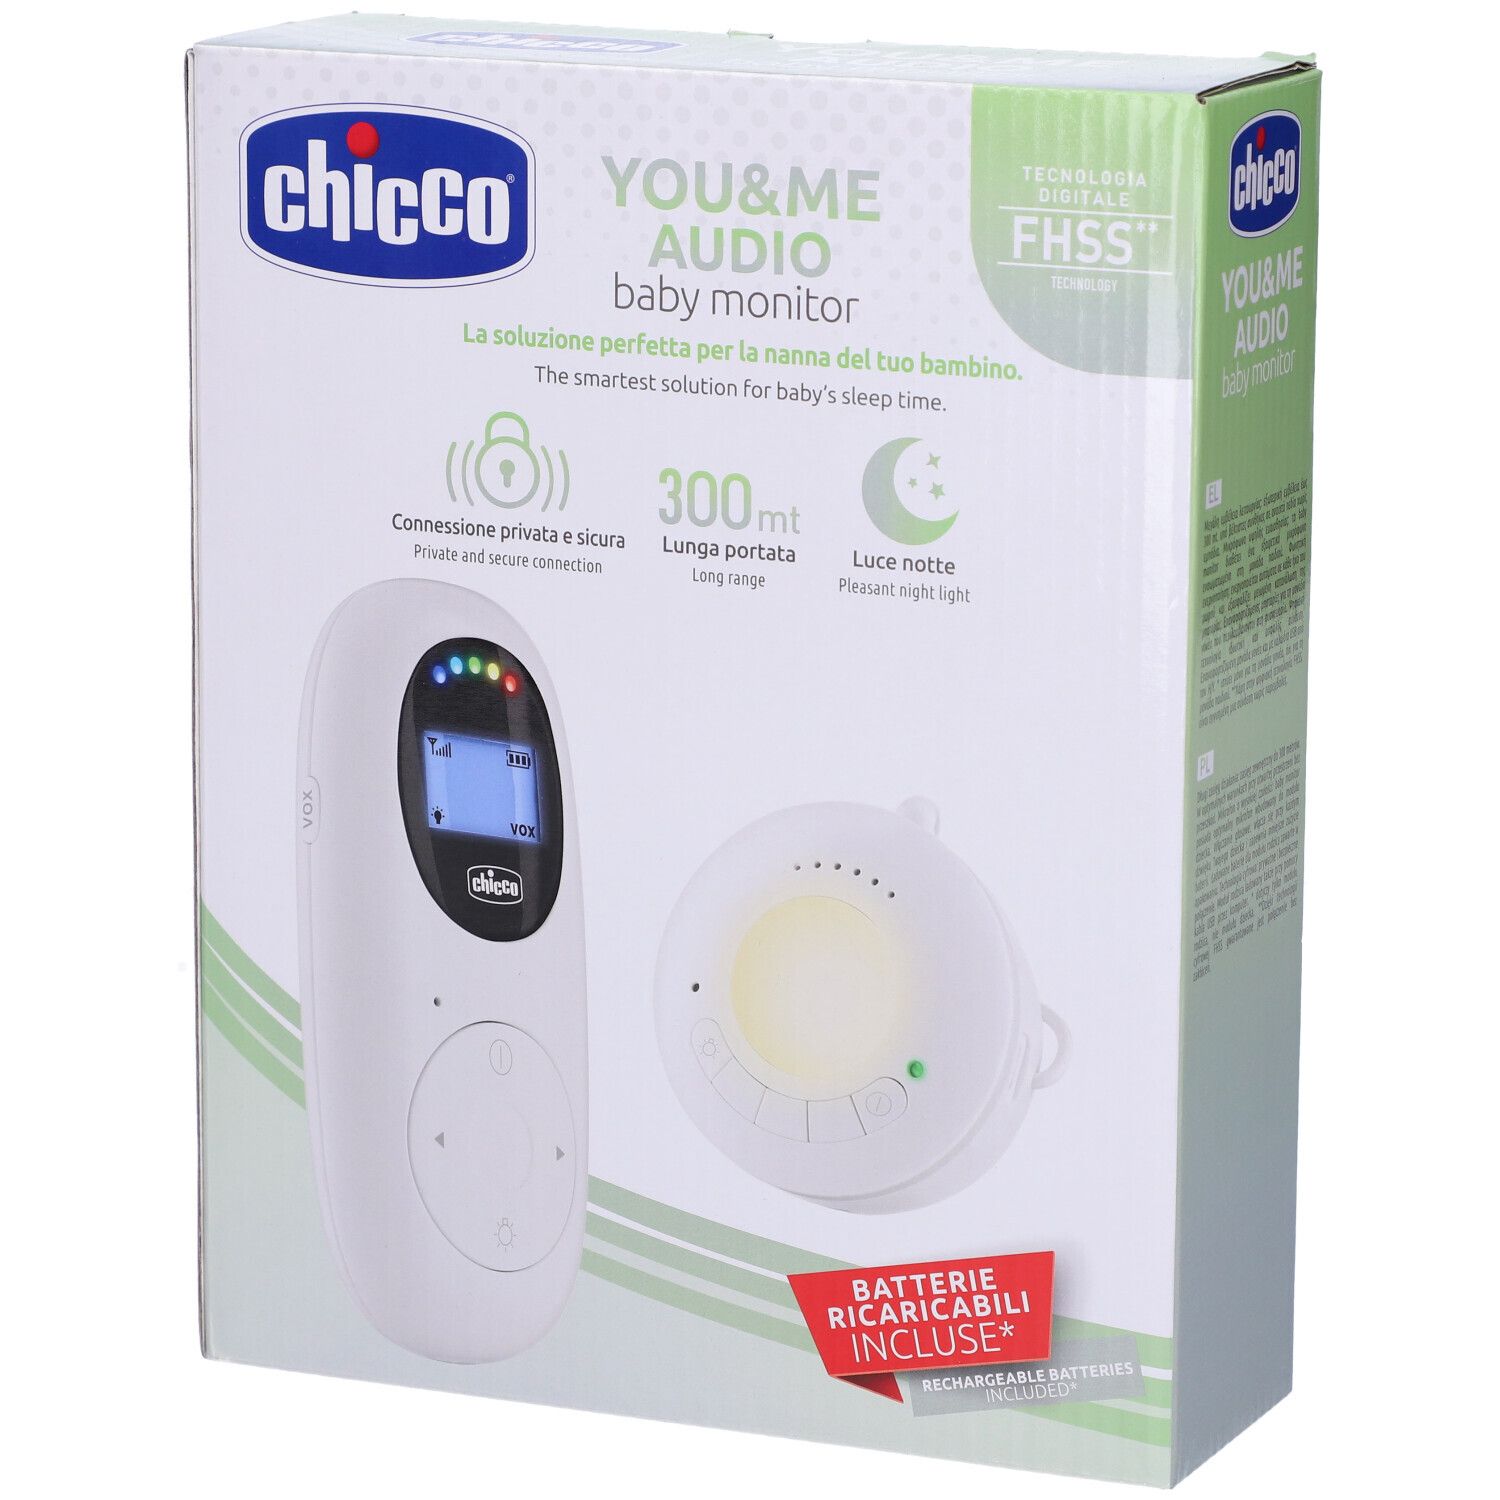 Babyphone Audio 300 Mètres - Chicco